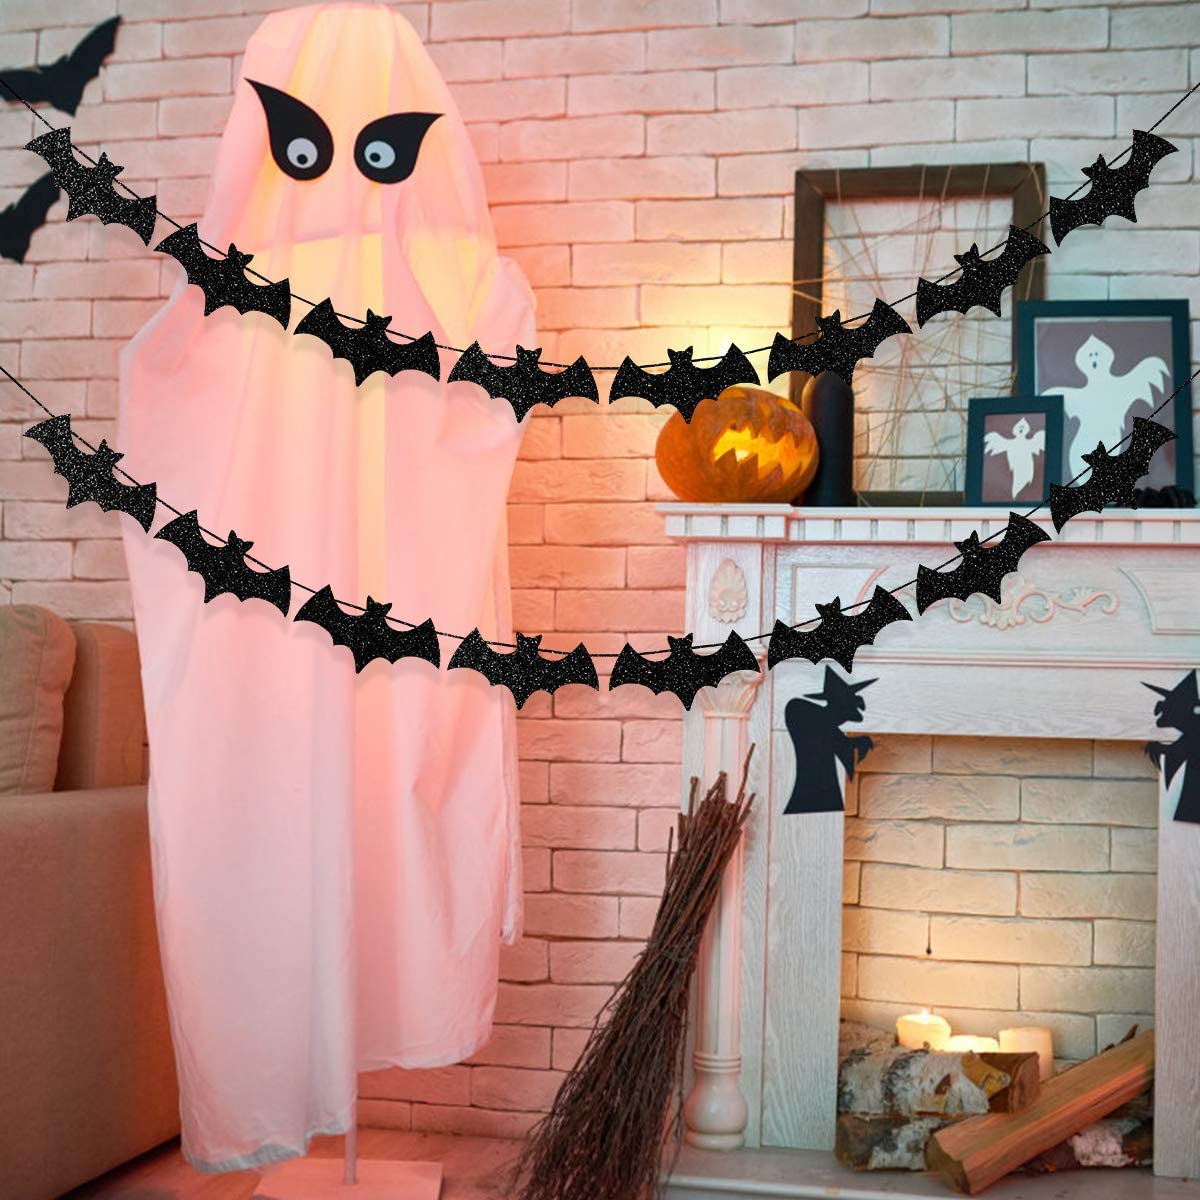 Una ghirlanda di pipistrelli - decorazioni di Halloween fai da te